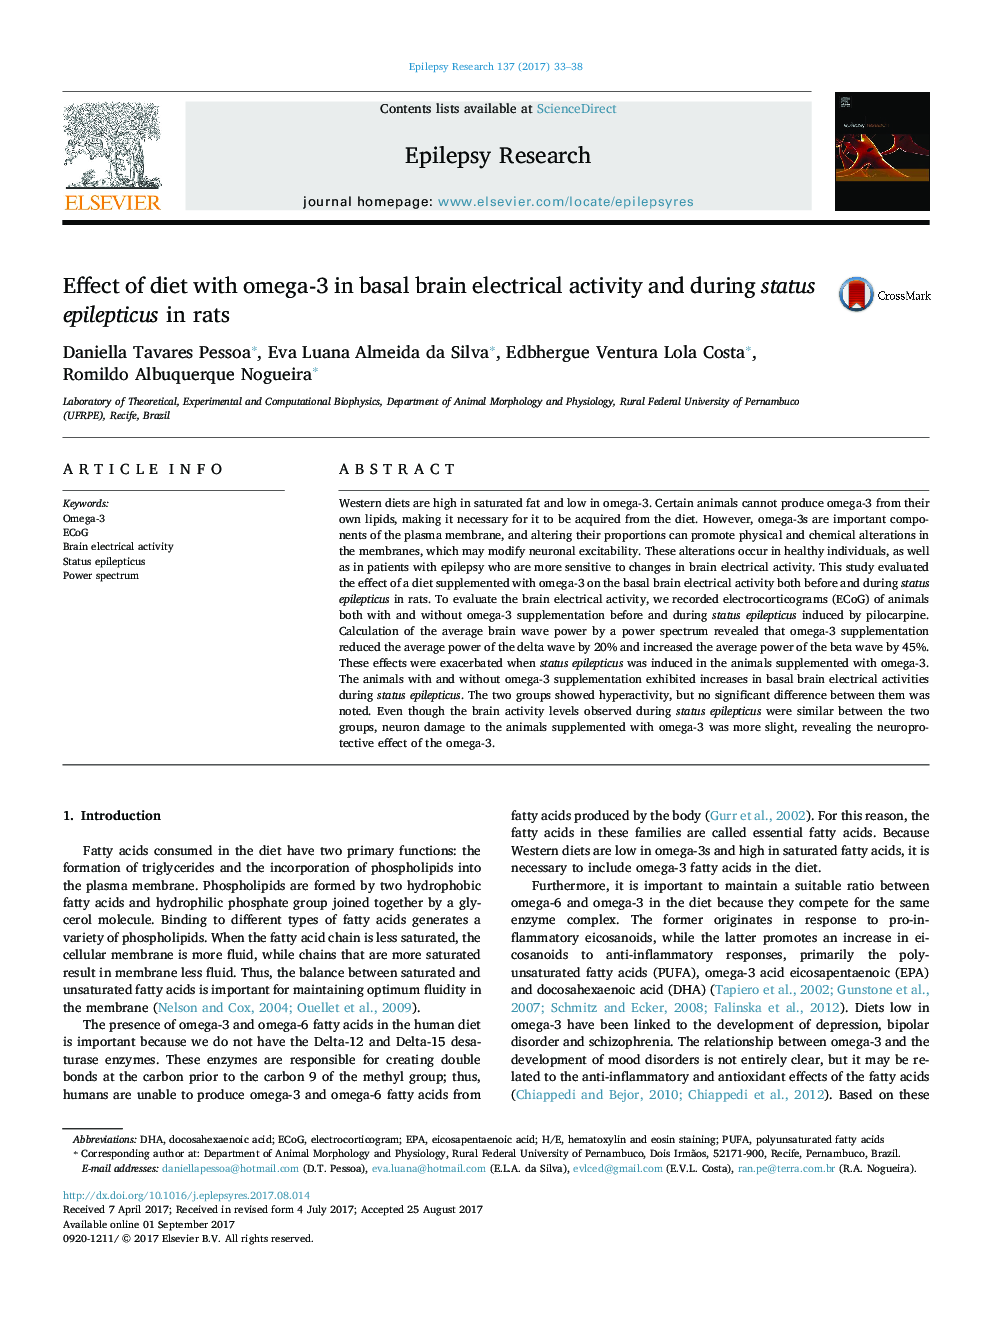 اثر رژیم غذایی با امگا -3 در فعالیت الکتریکی مغز پایه و در طی صرع موضعی در موش صحرایی 